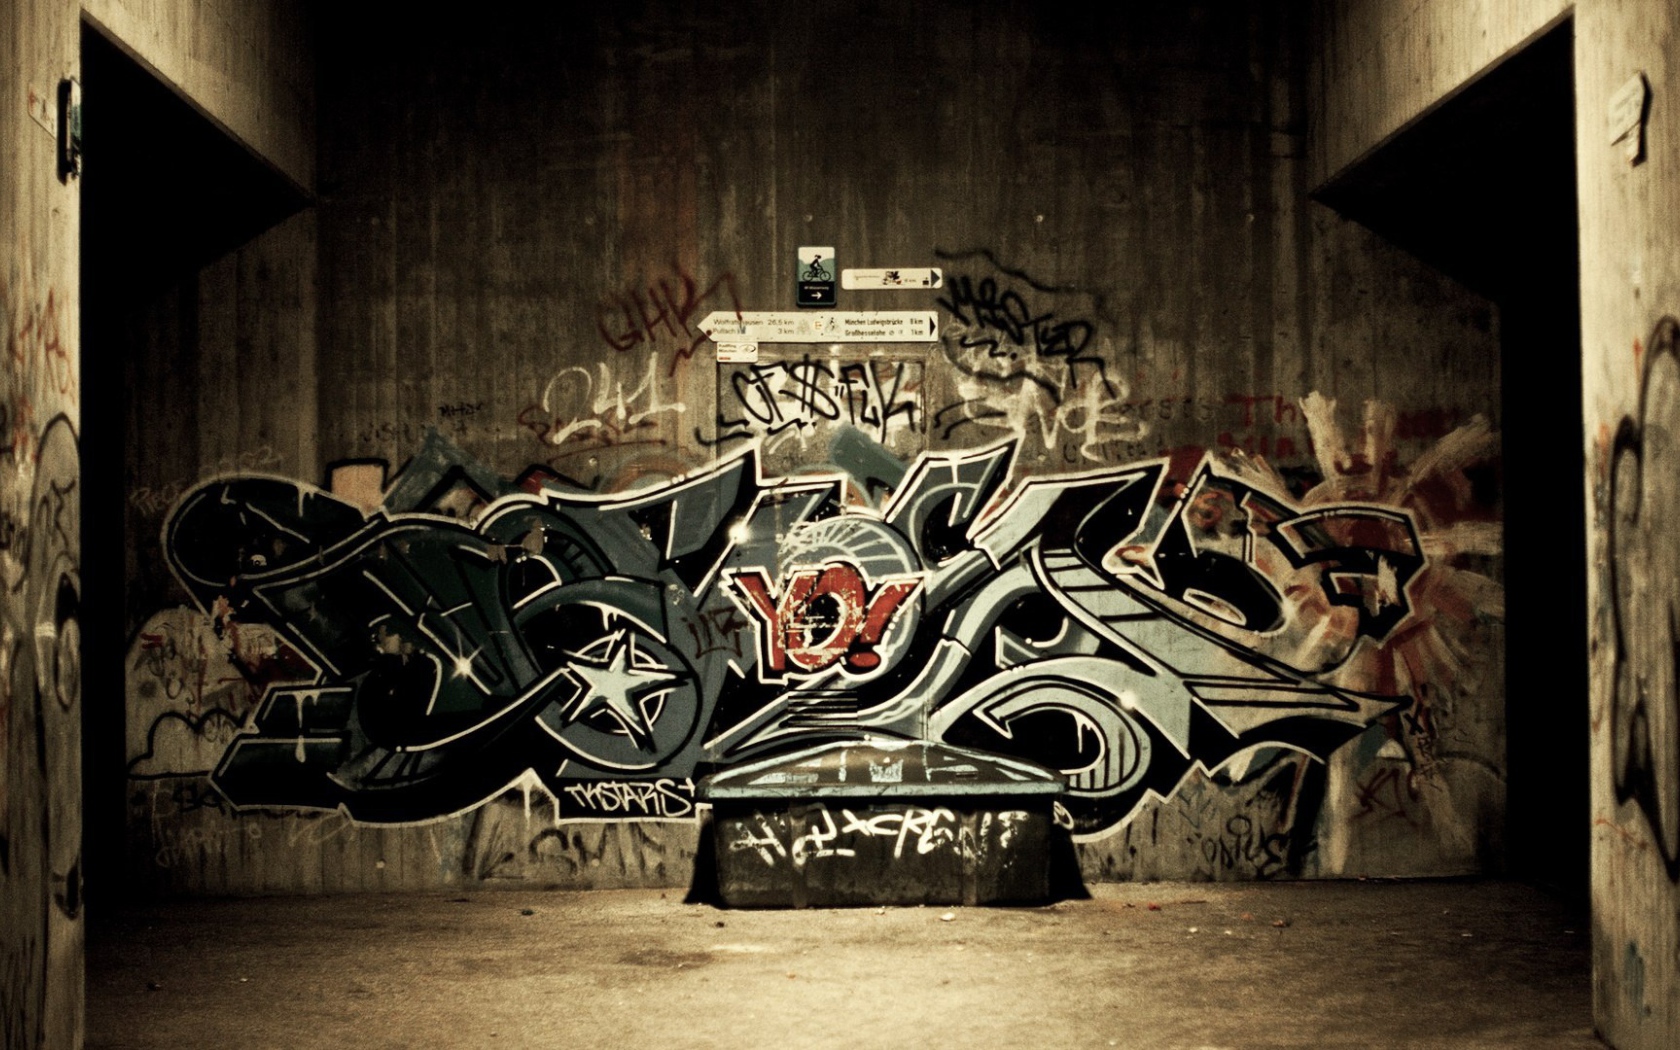 Graffiti in the alley